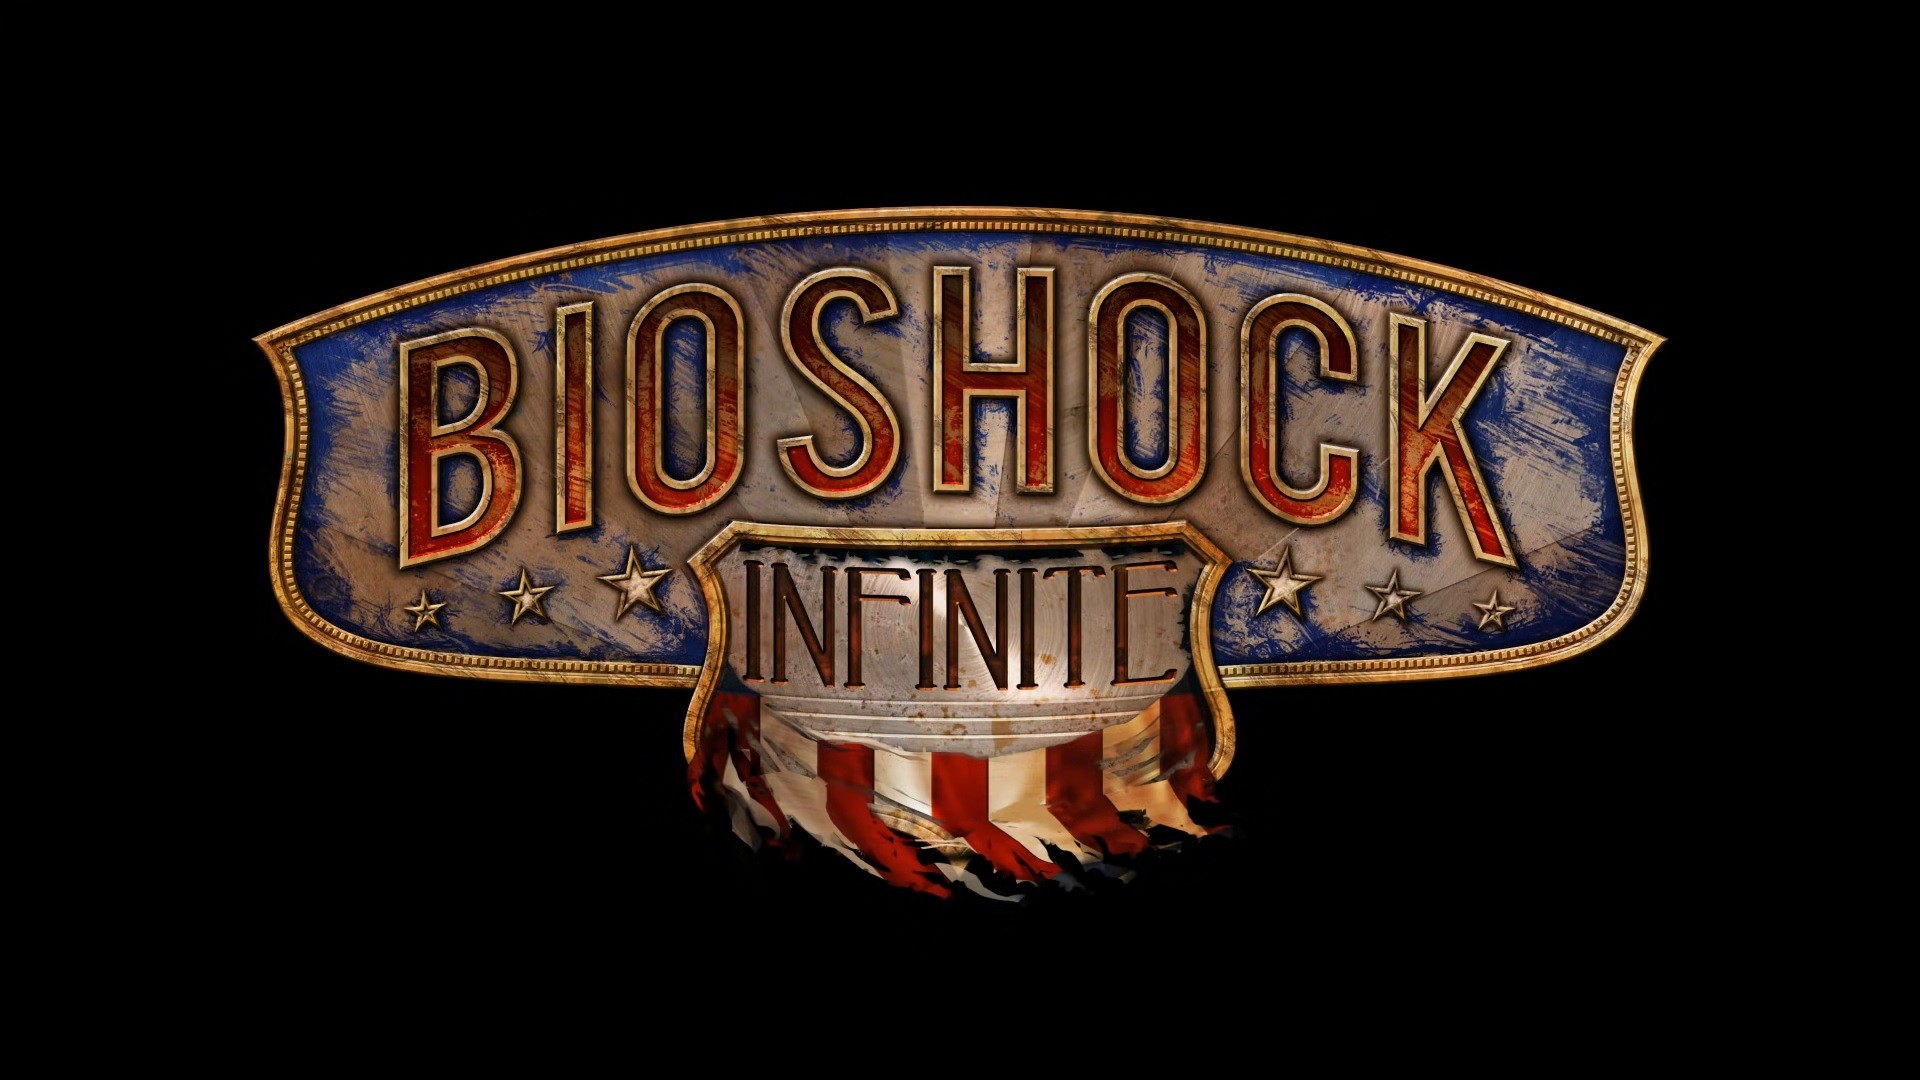 ผู้เล่น Steam ไม่พอใจอัปเดตใหม่ Bioshock Infinite ที่แทรกโปรแกรมร้านค้าของตัวเองเข้ามา